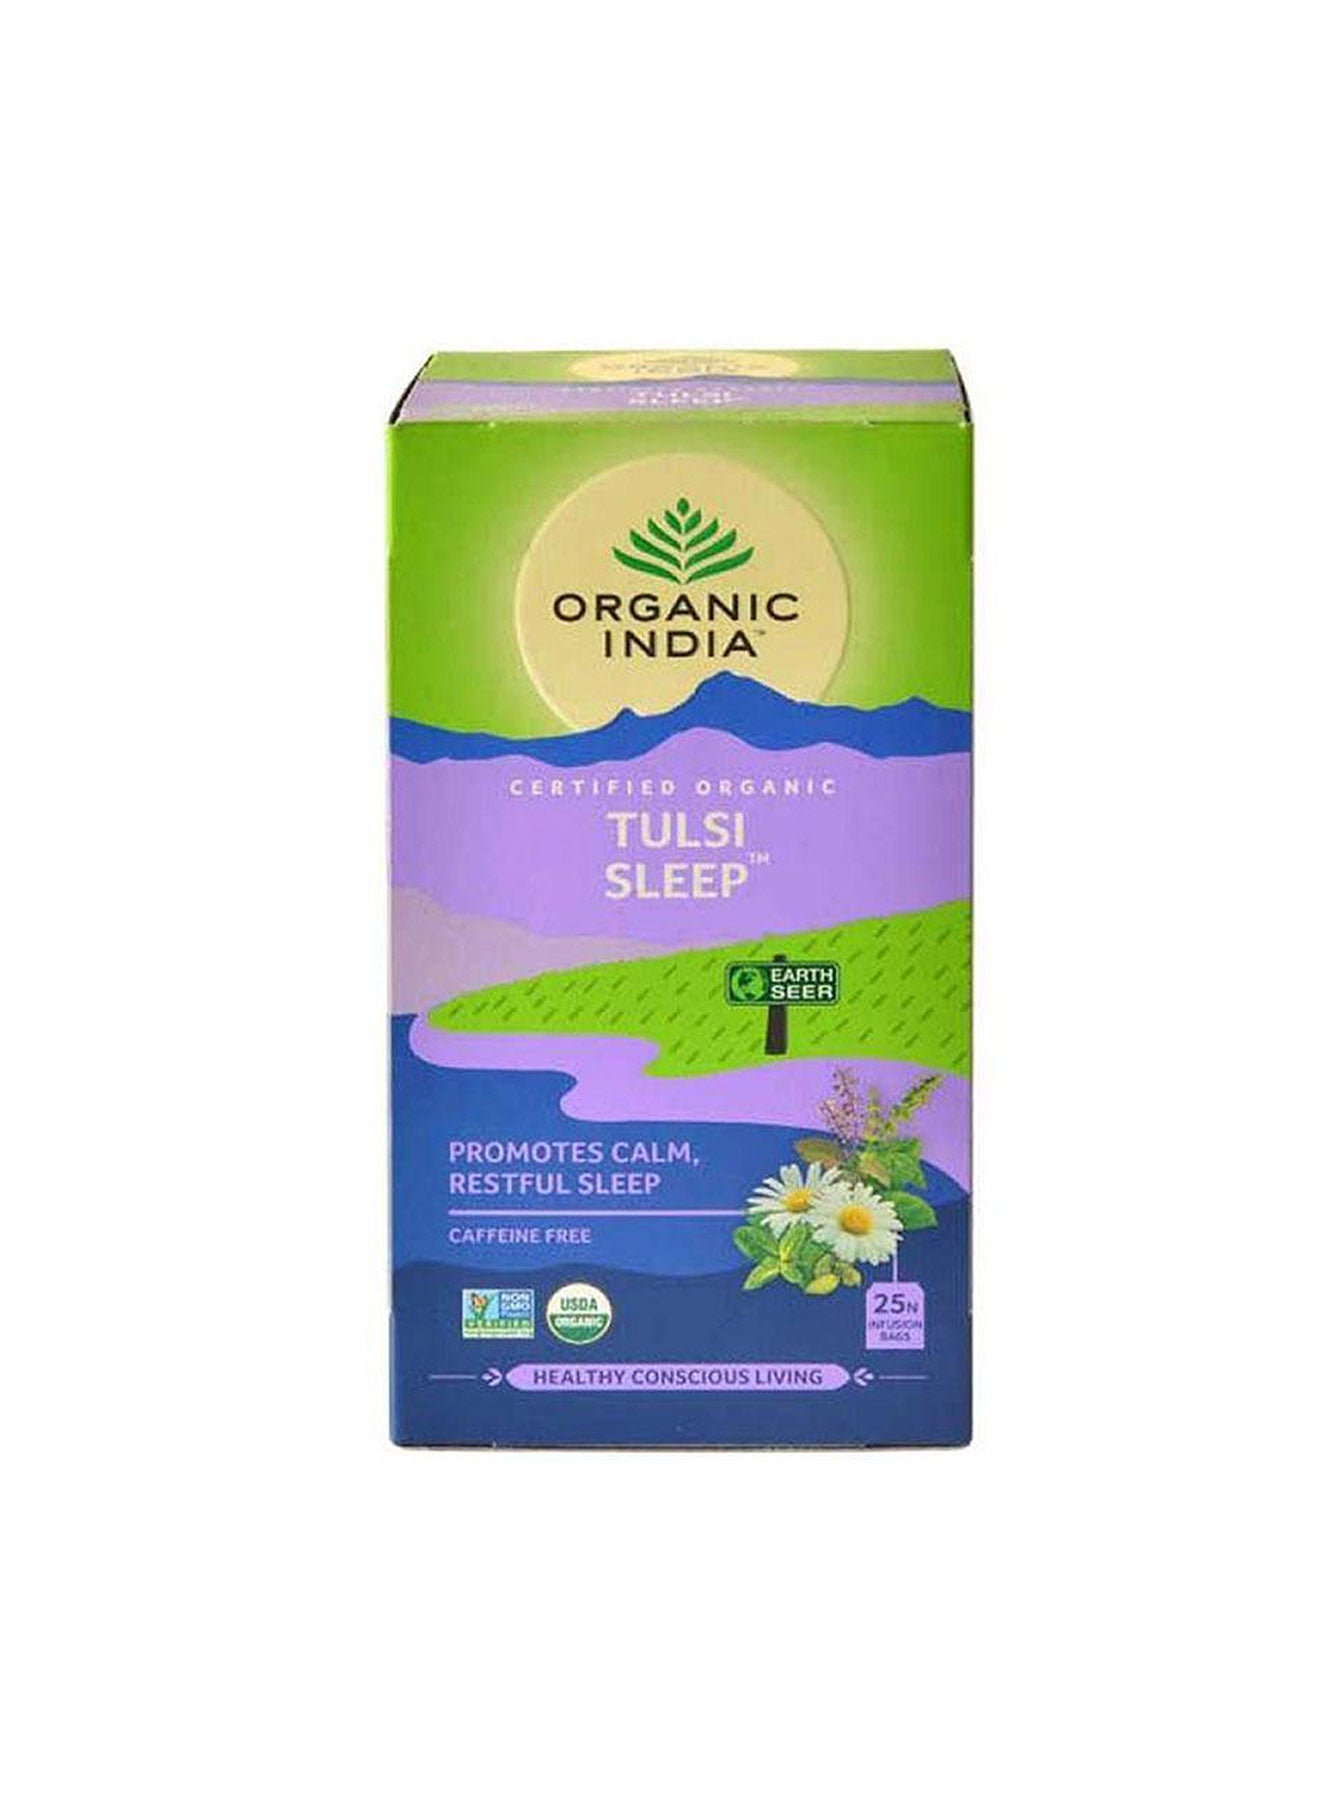 Organic India Tulsi Sleep Tea Bags 1 box25tea bags